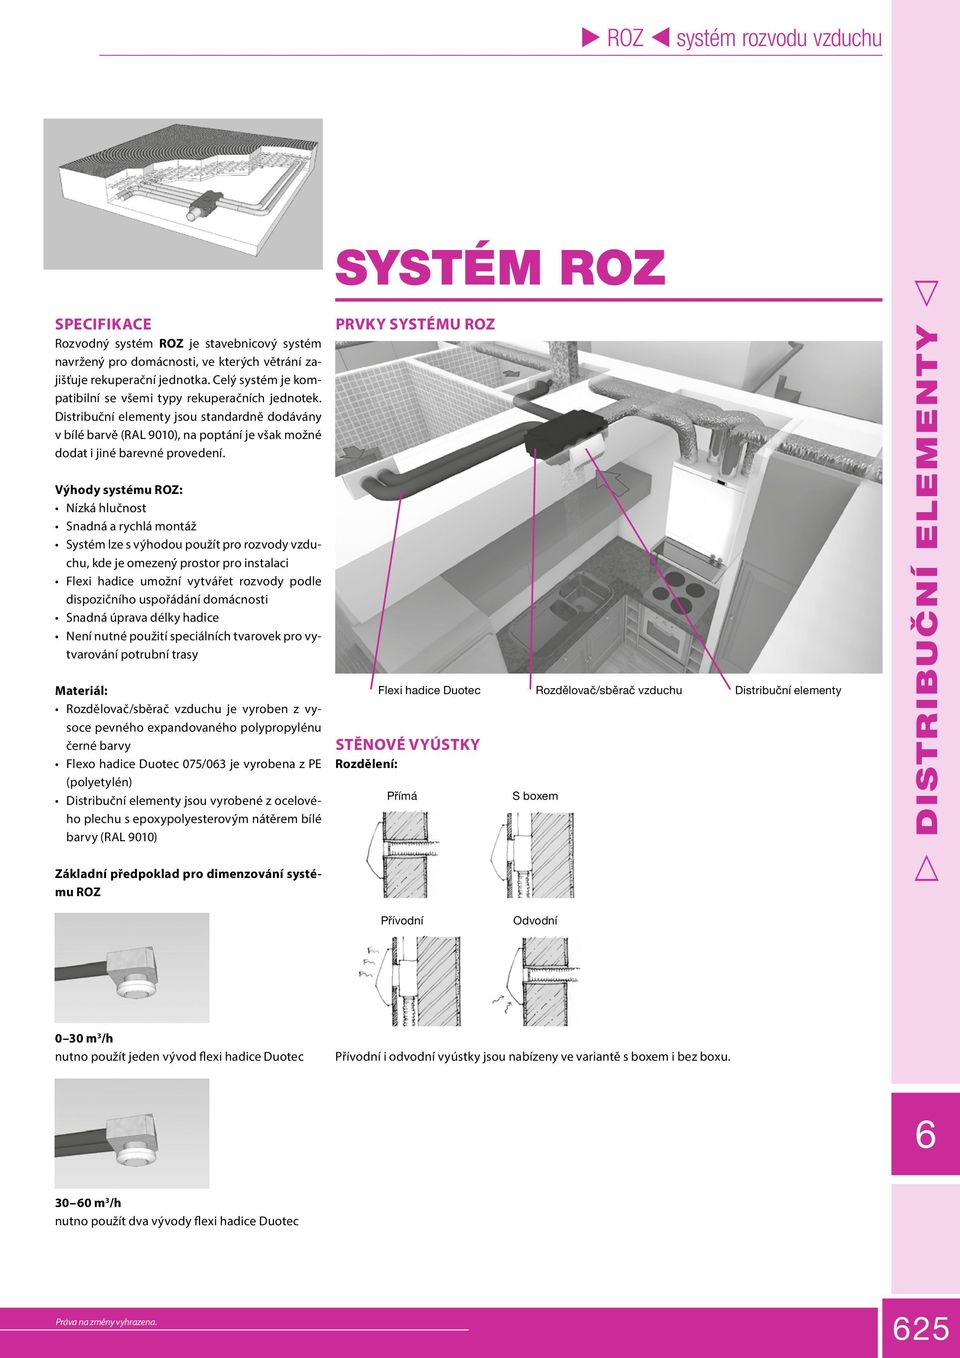 Výhody systému ROZ: Nízká hlučnost Snadná a rychlá montáž Systém lze s výhodou použít pro rozvody vzduchu, kde je omezený prostor pro instalaci Flexi hadice umožní vytvářet rozvody podle dispozičního